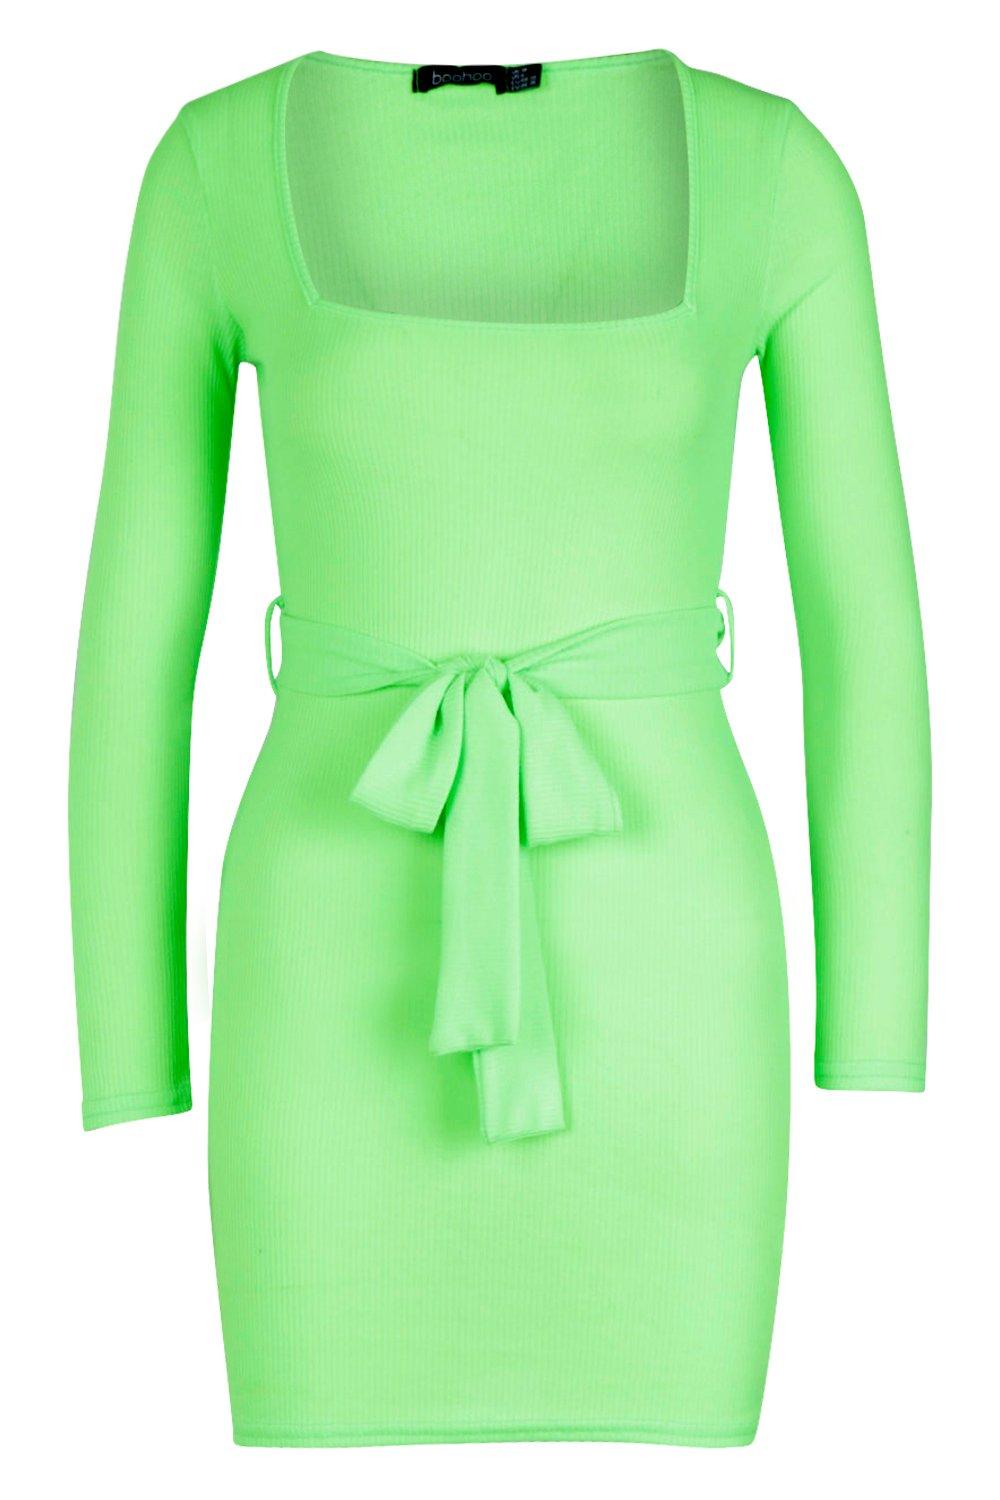 boohoo neon green dress